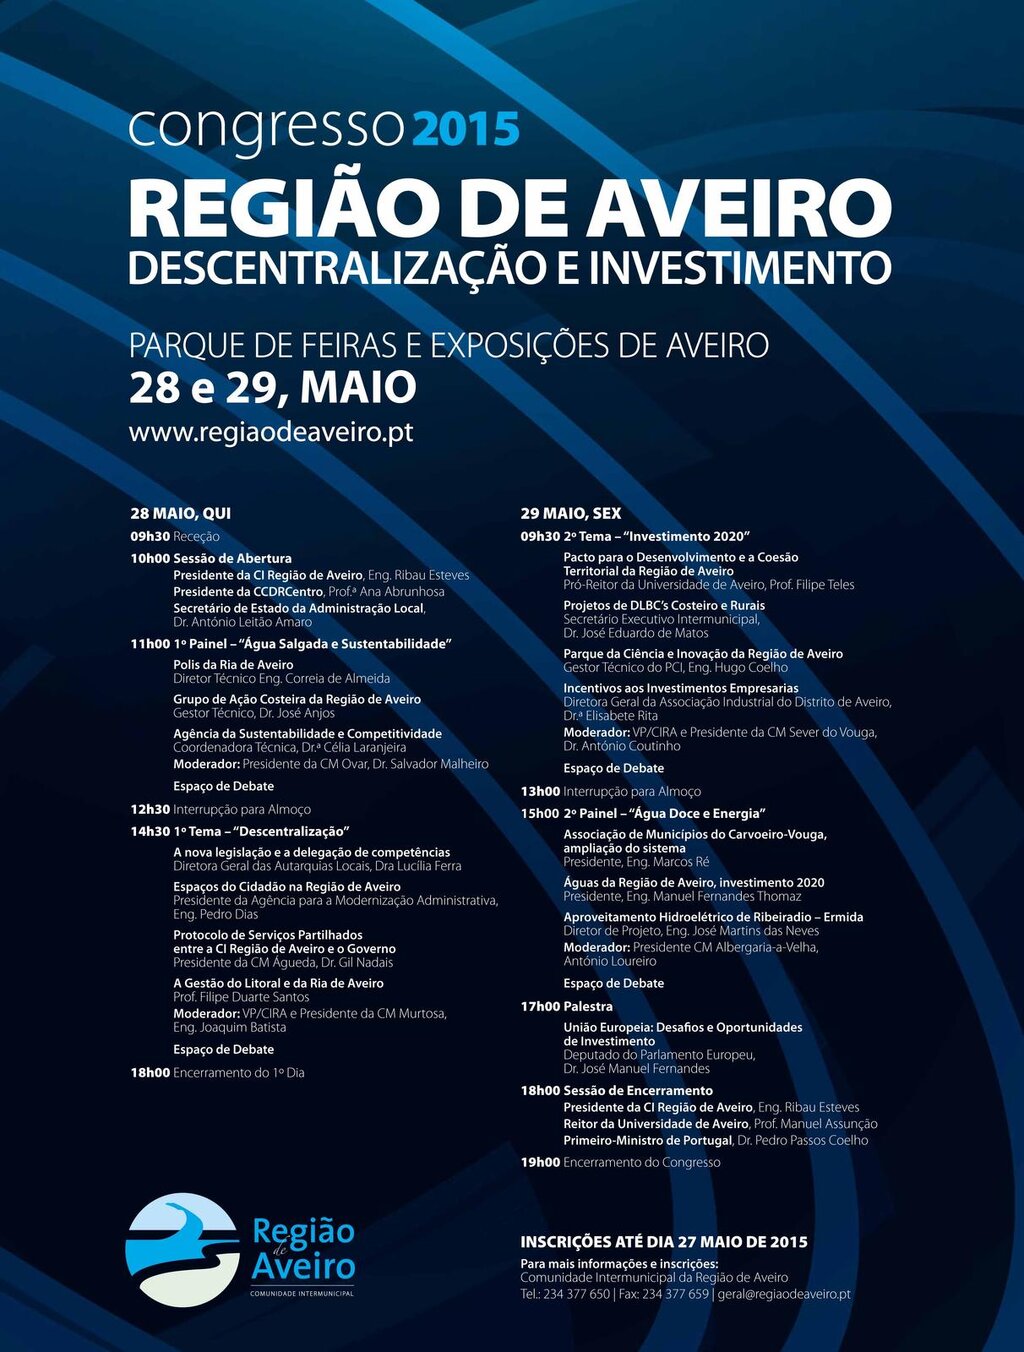 Congresso da Região de Aveiro 2015